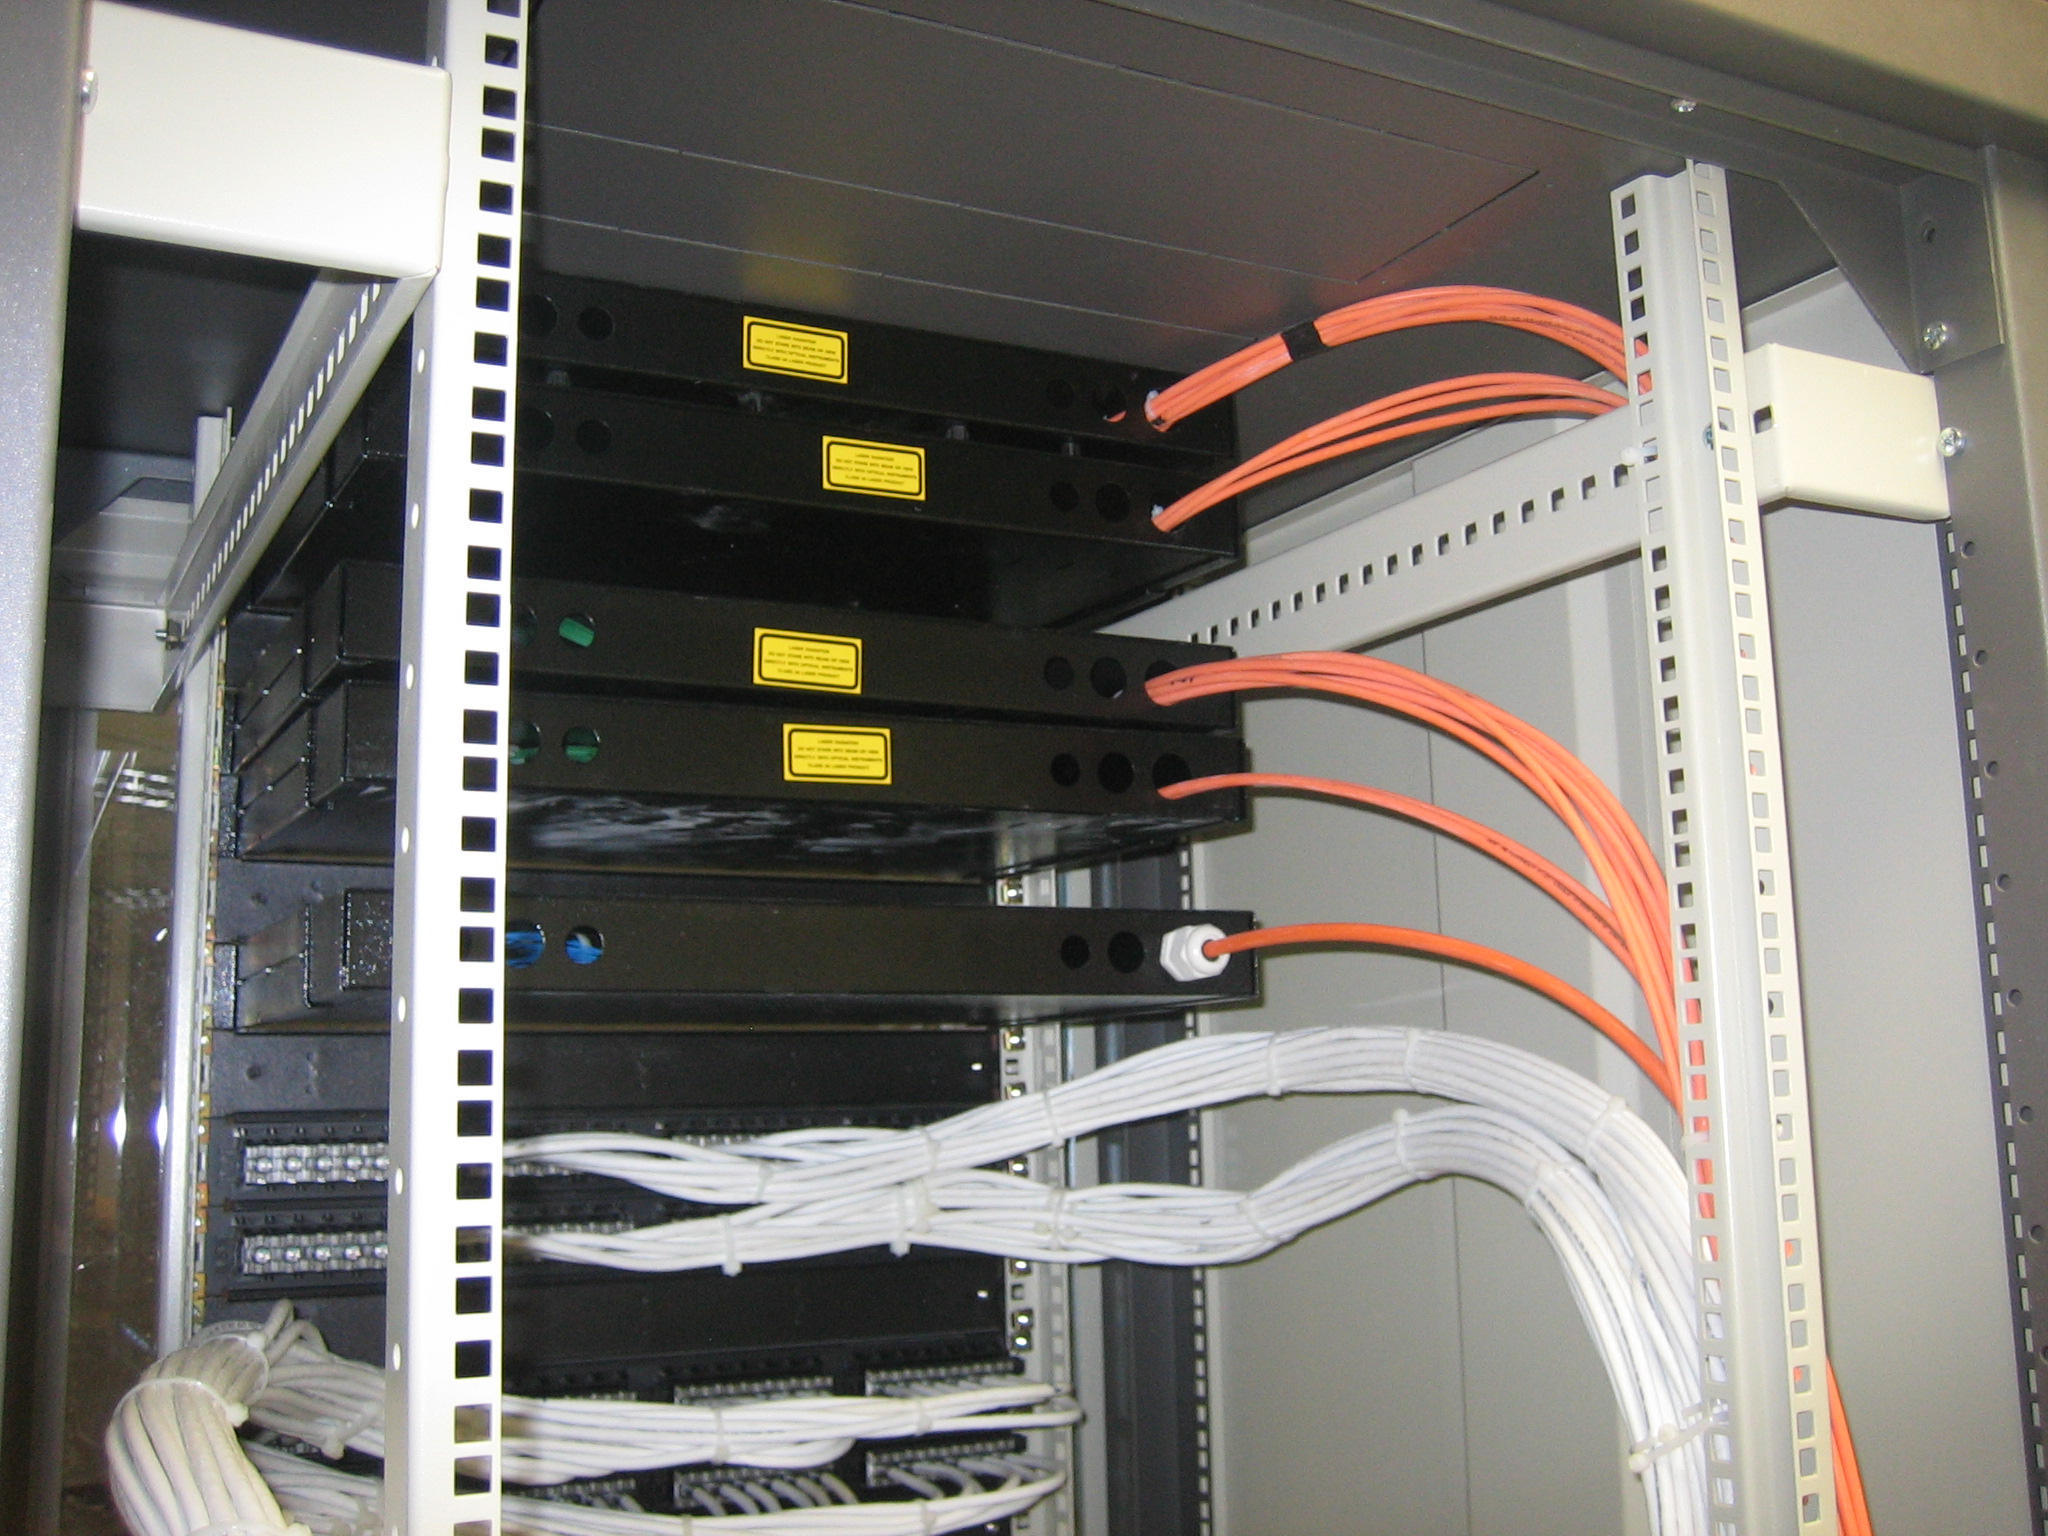 479Συστήματα Δομημένης Καλωδίωσης, με UTP, FTP, STP και Fiber Optic τεχνολογία